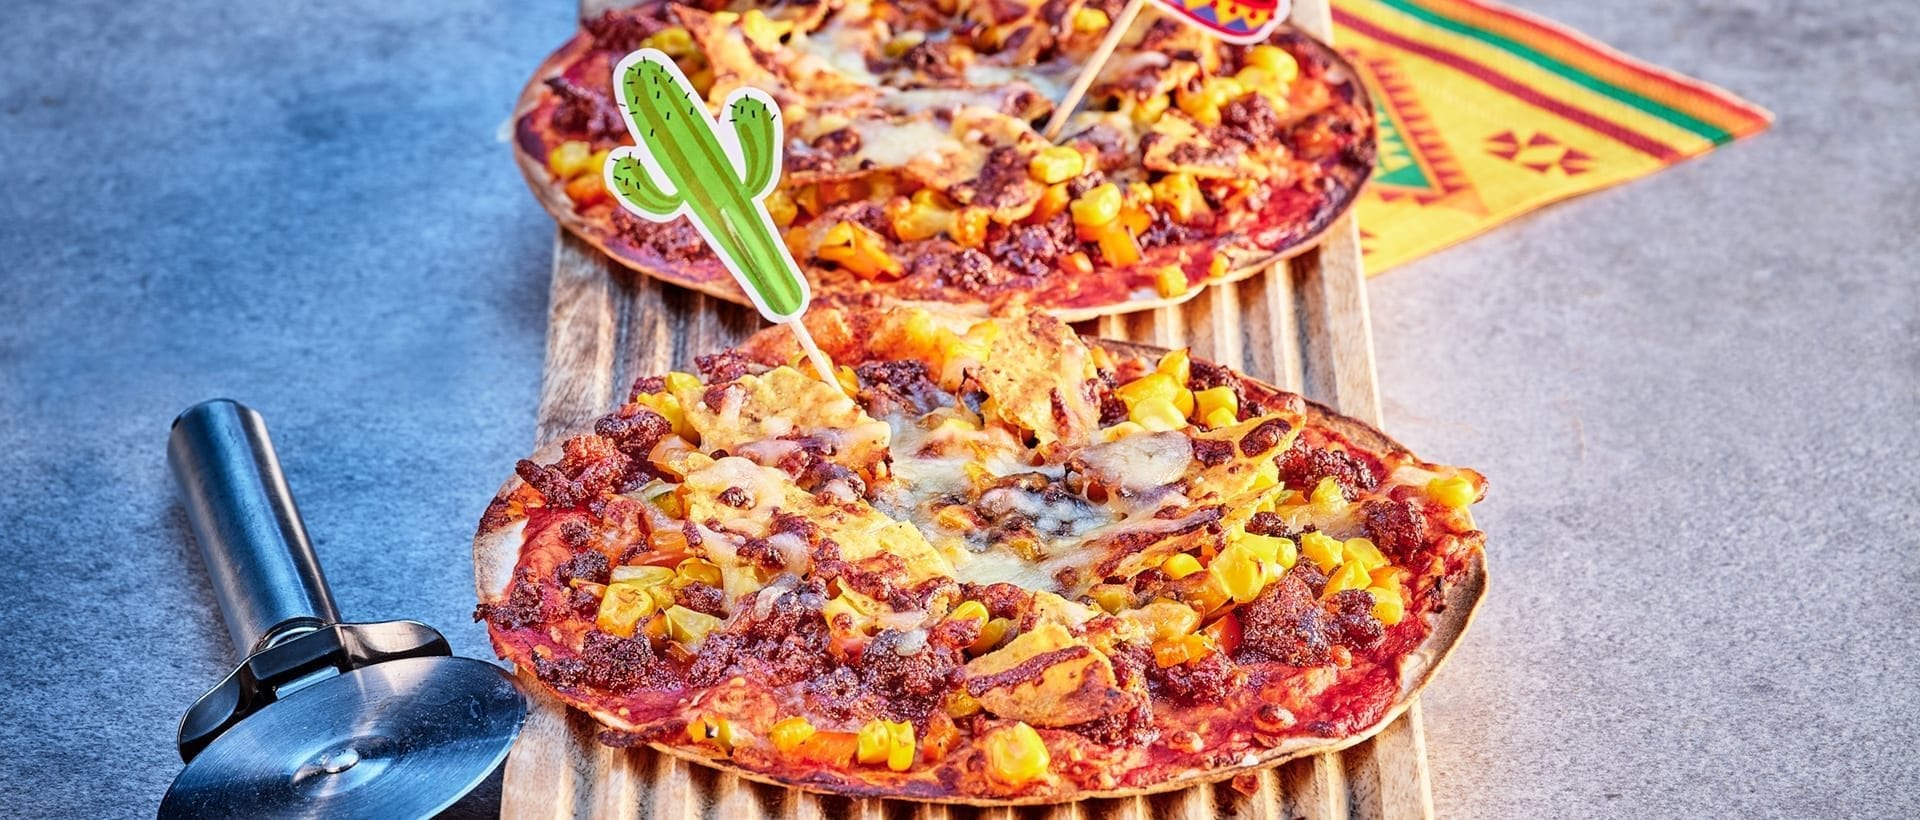 Savaaqqamik taco pizzaliaq